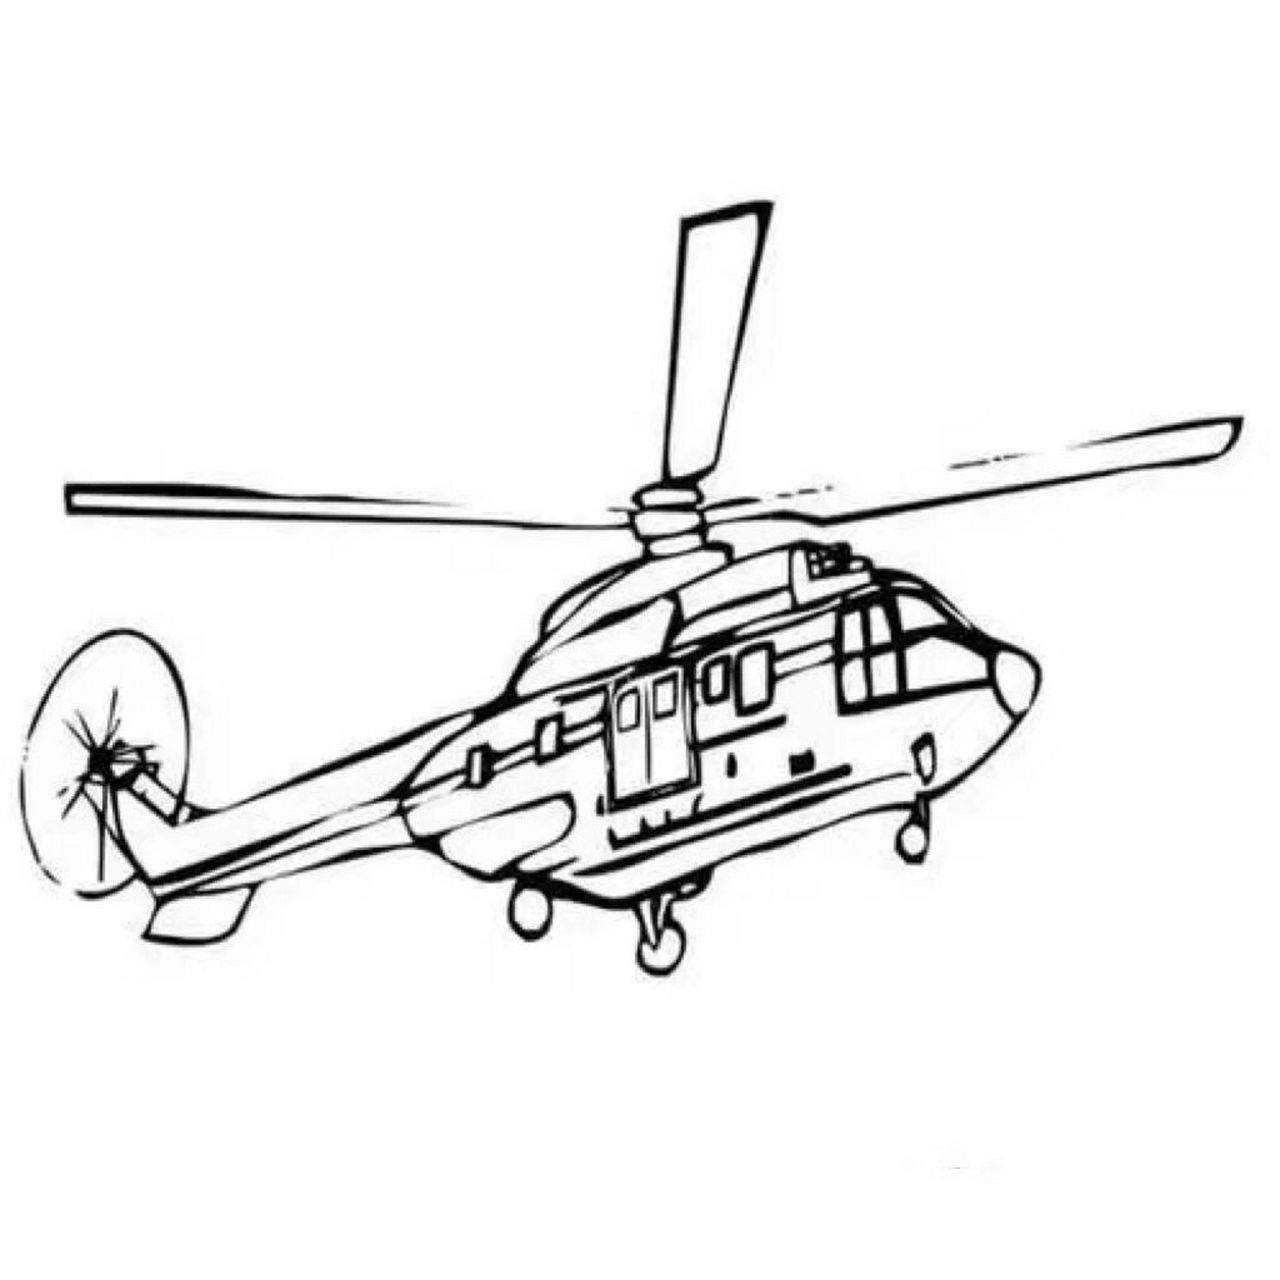 直升飞机 